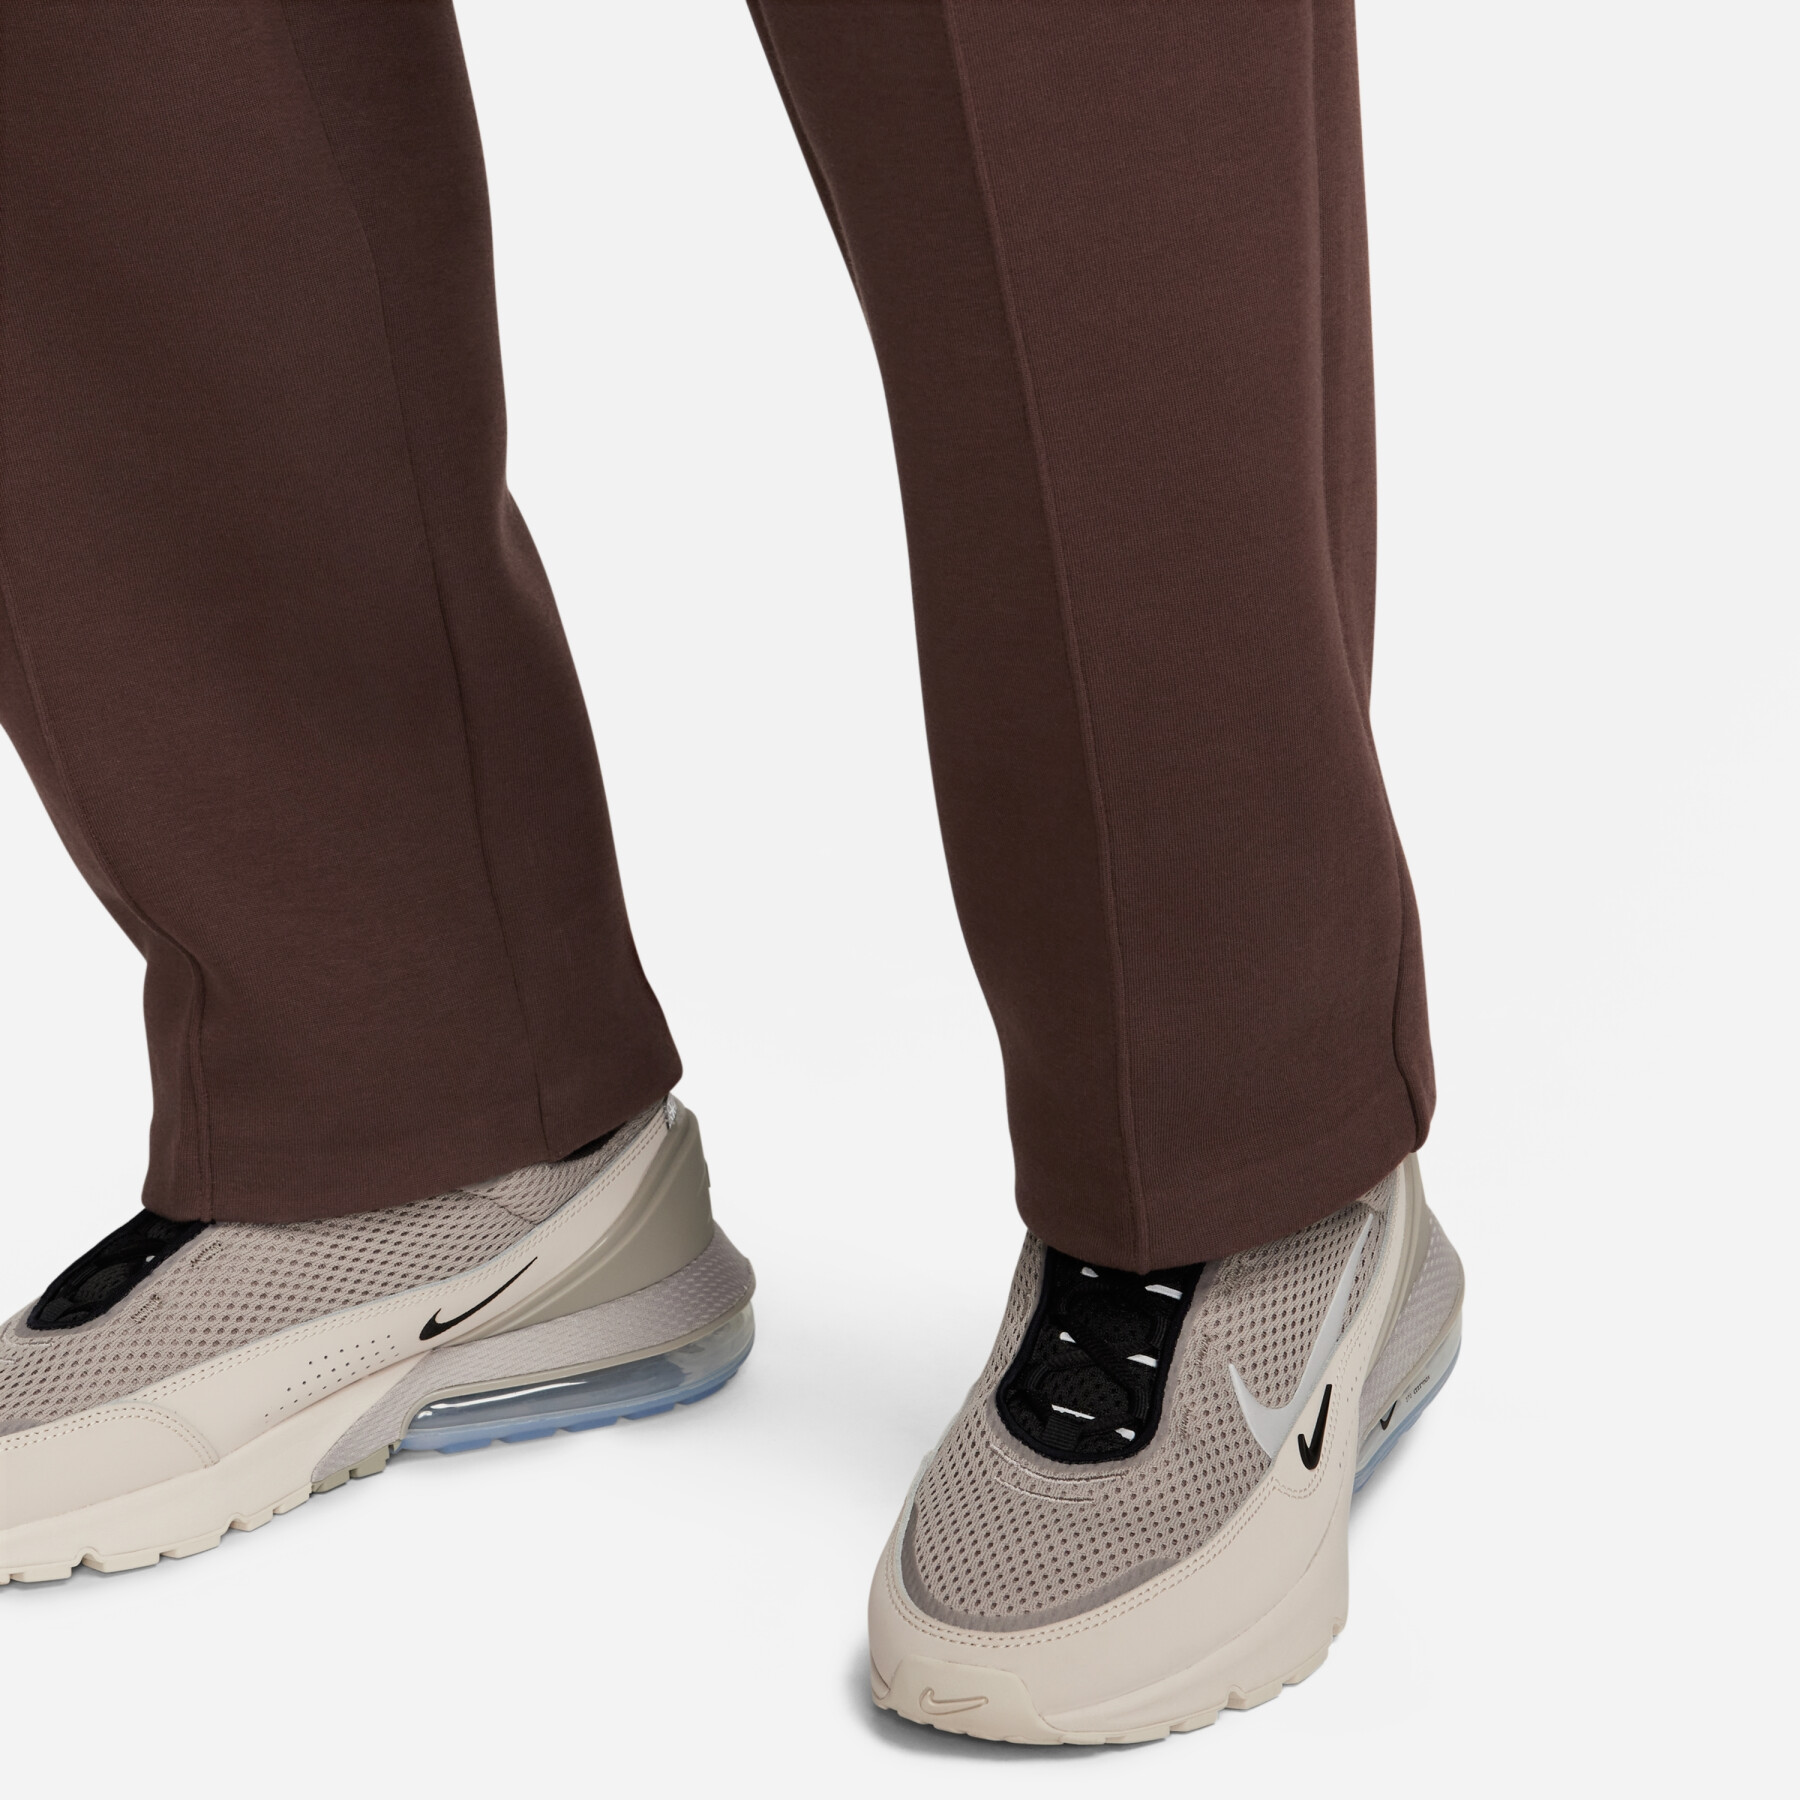 Pantalon de survêtement ample à ourlet ouvert Nike Tech Fleece Reimagined